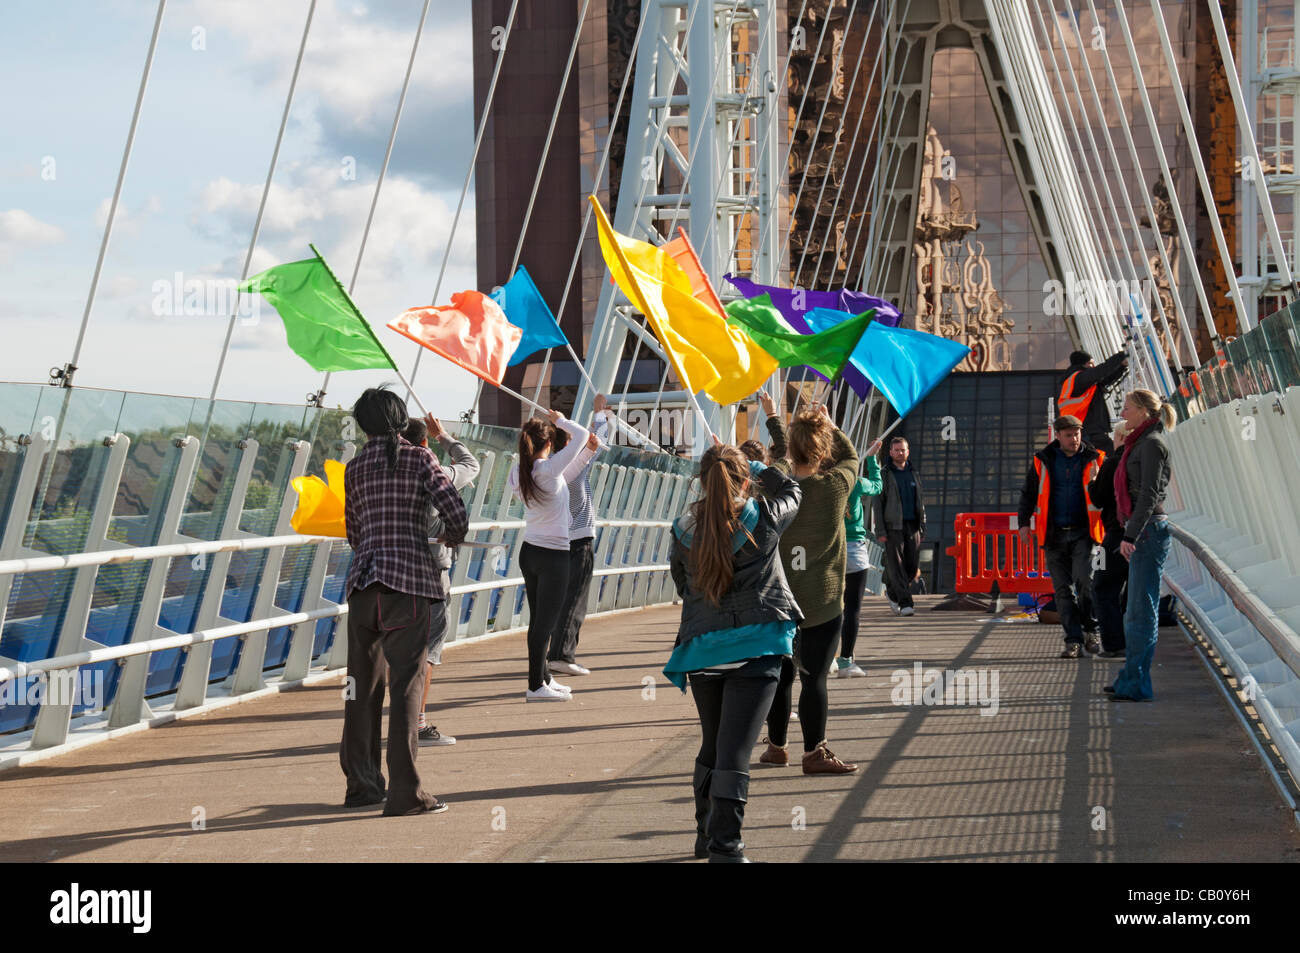 Eine Gruppe von jungen Menschen üben eine Fahnenschwingen Routine für den Looping die Schleife in Salford Quays, Veranstaltung am Samstag, 19. Mai. Die Veranstaltung markierte den Beginn des London 2012 "Spiele Time" im Nordwesten Englands und der erste Tag des Olympischen Fackellaufs in Großbritannien. Stockfoto